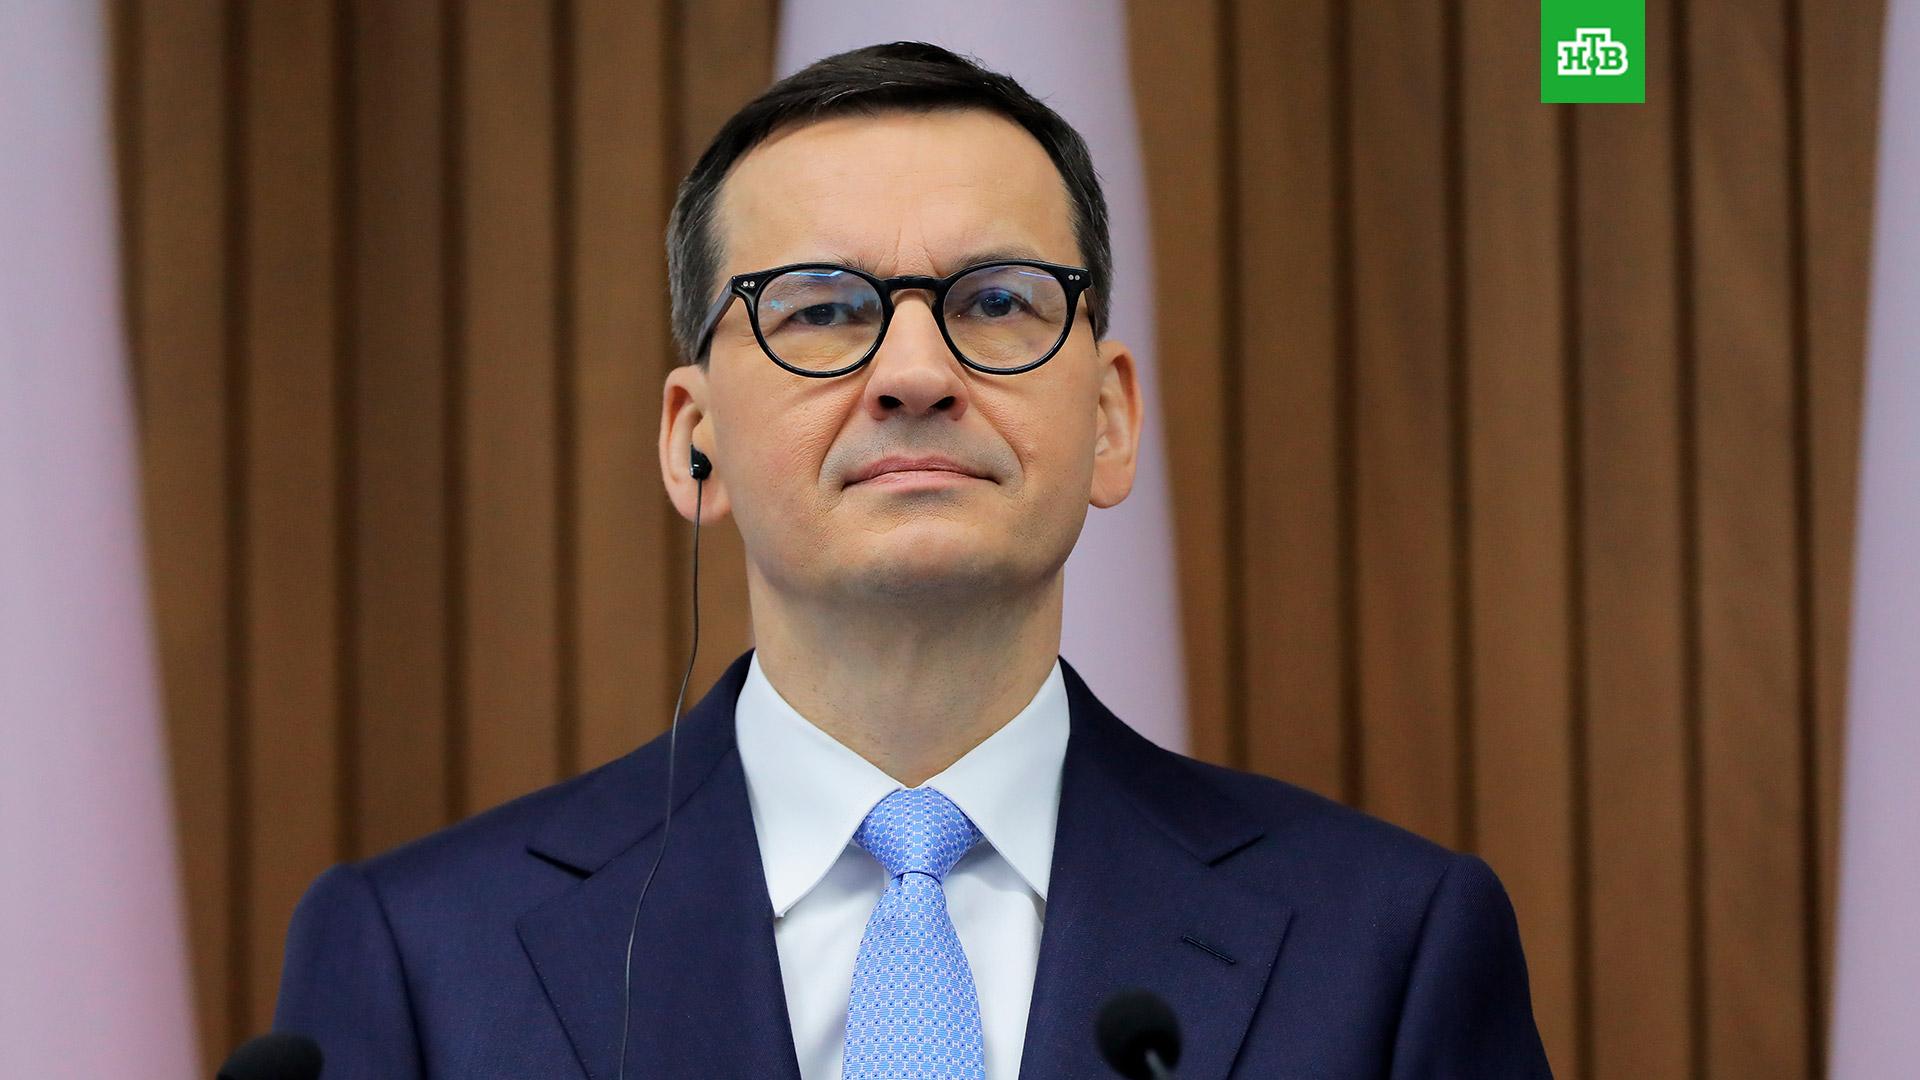 Премьер Польши объявил о начале контрнаступления ВСУ